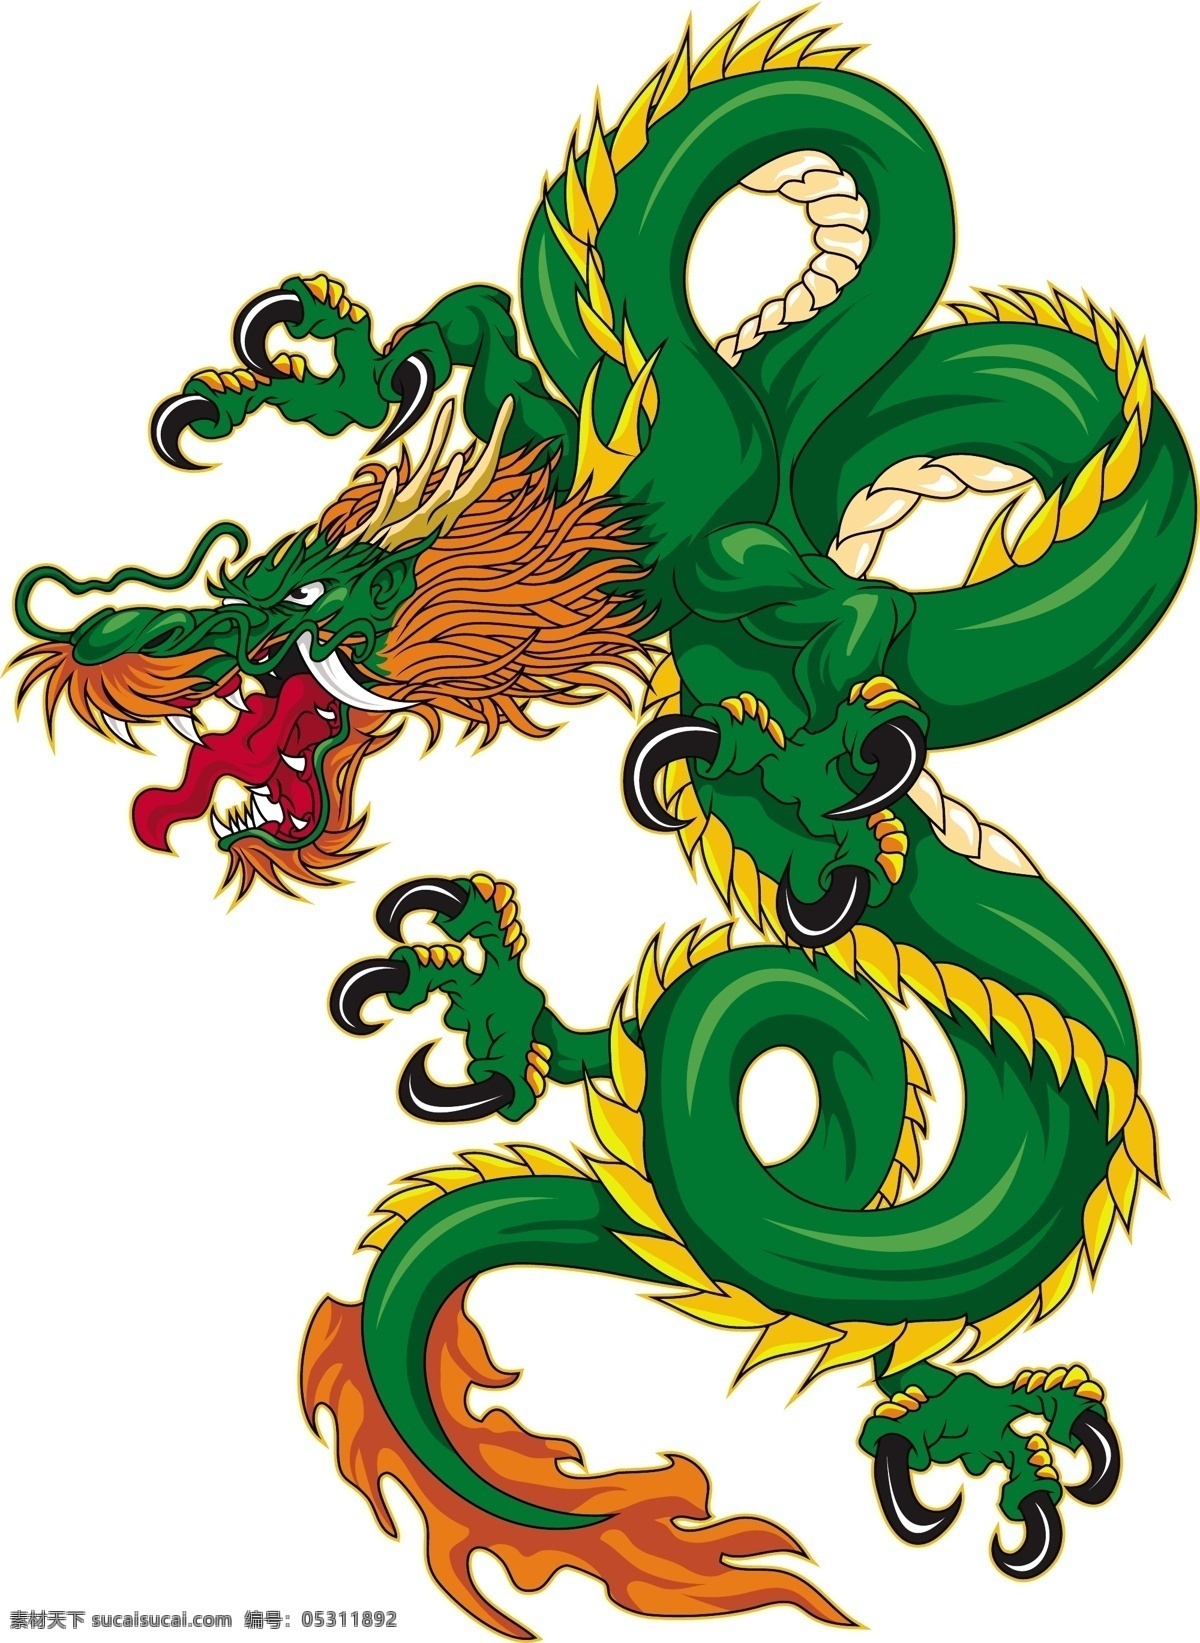 巨龙 飞龙 纹身 中国龙 纹身图案 龙 龙纹身 神物 神话 传说 龙腾 猛兽 吉祥 图腾 纹样 花边 矢量